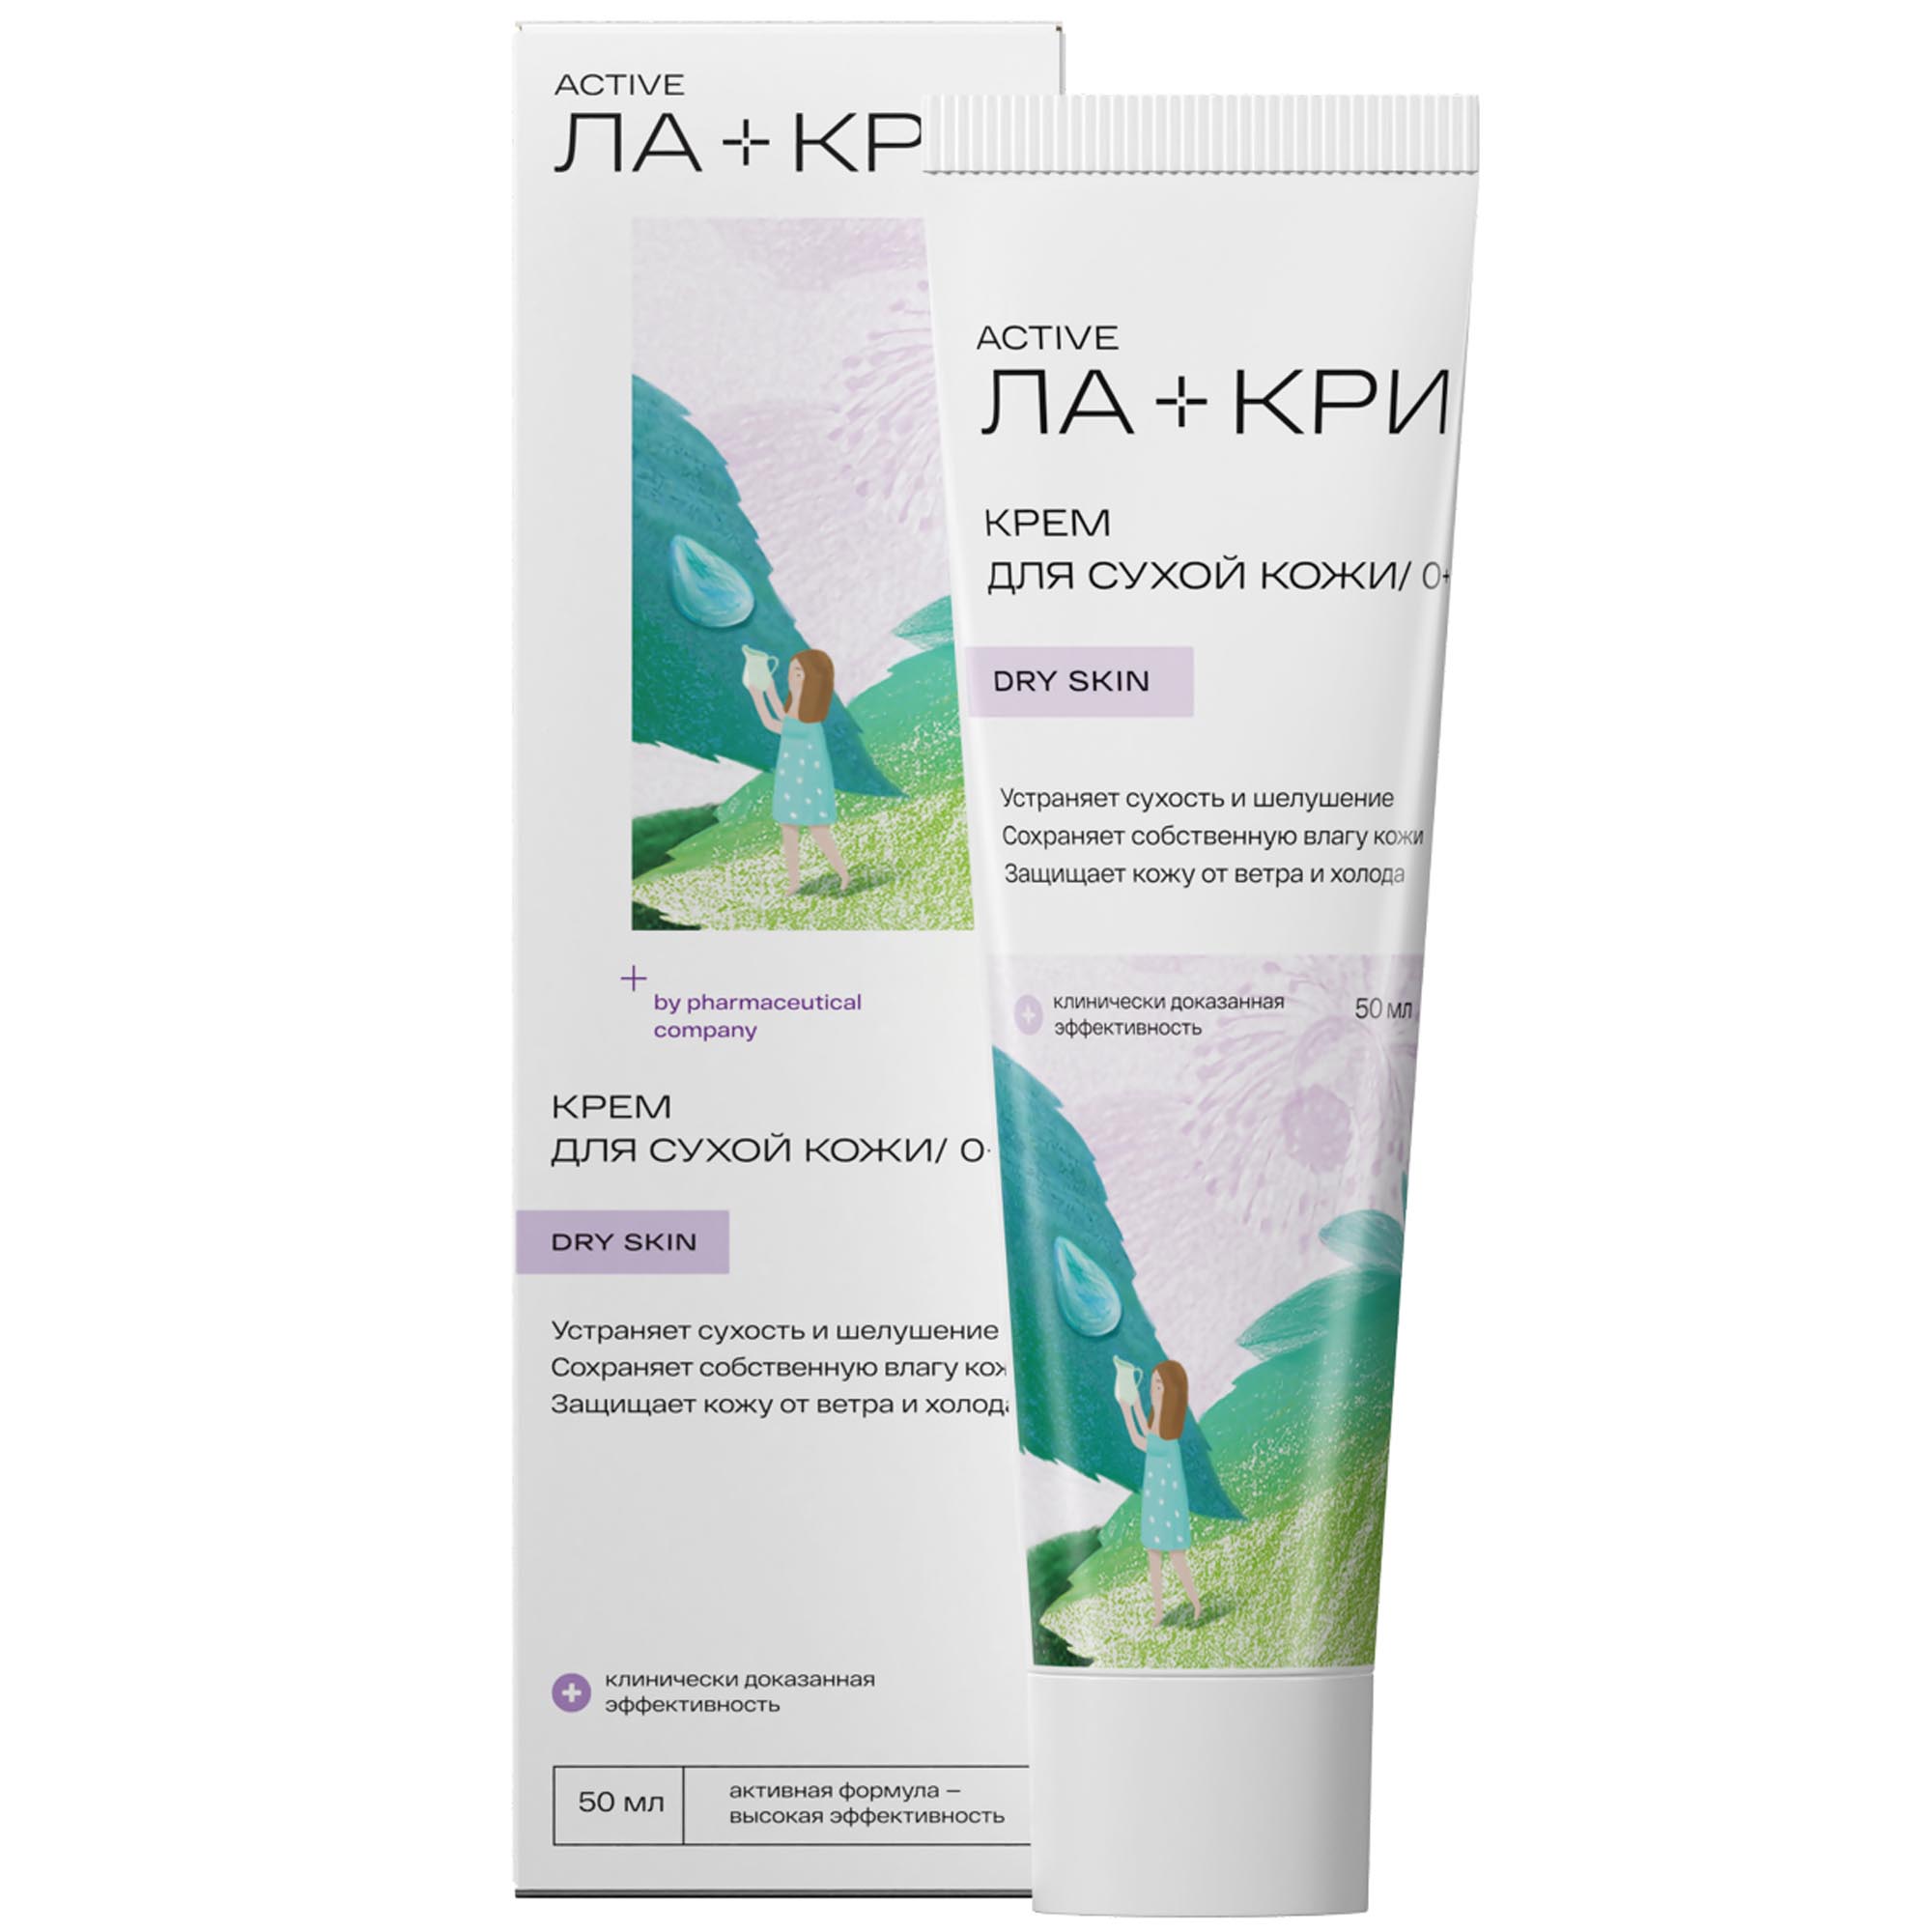 Ла-Кри Крем для сухой кожи 0+, 50 мл (Ла-Кри, Active) ла кри dry skin крем для сухой кожи